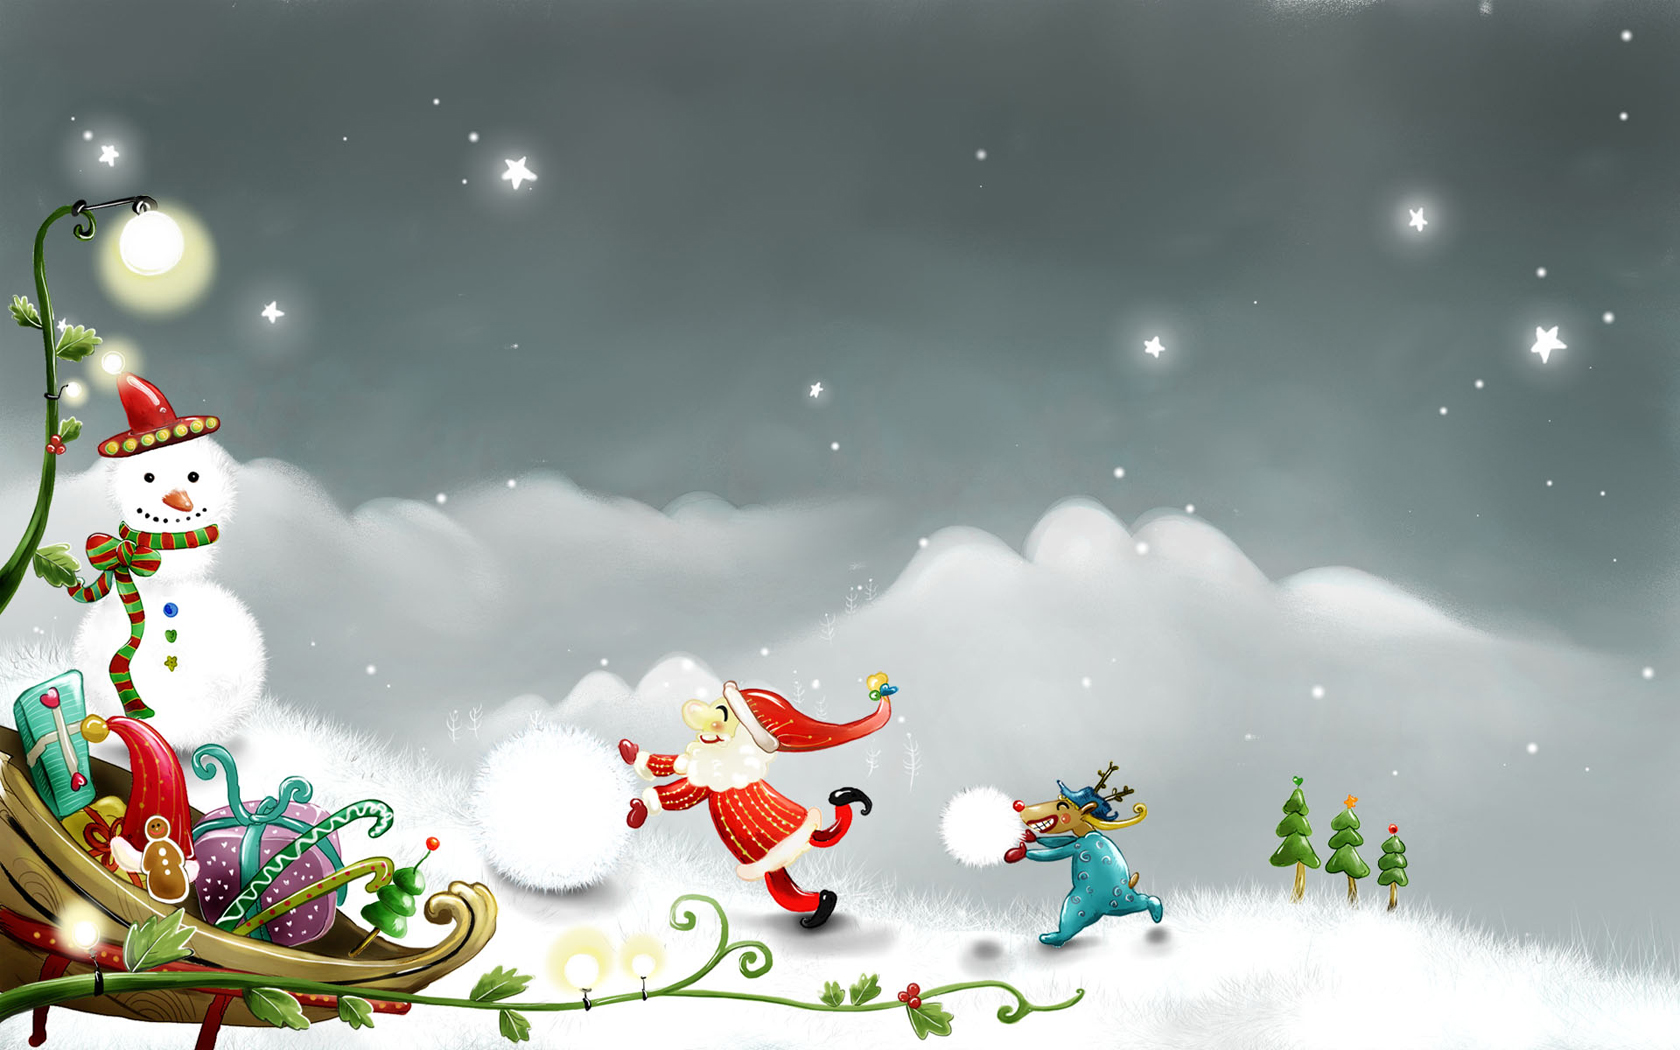 Winter Christmas Desktop Backgrounds 10696 Wallpaper Wallpaper hd 1680x1050